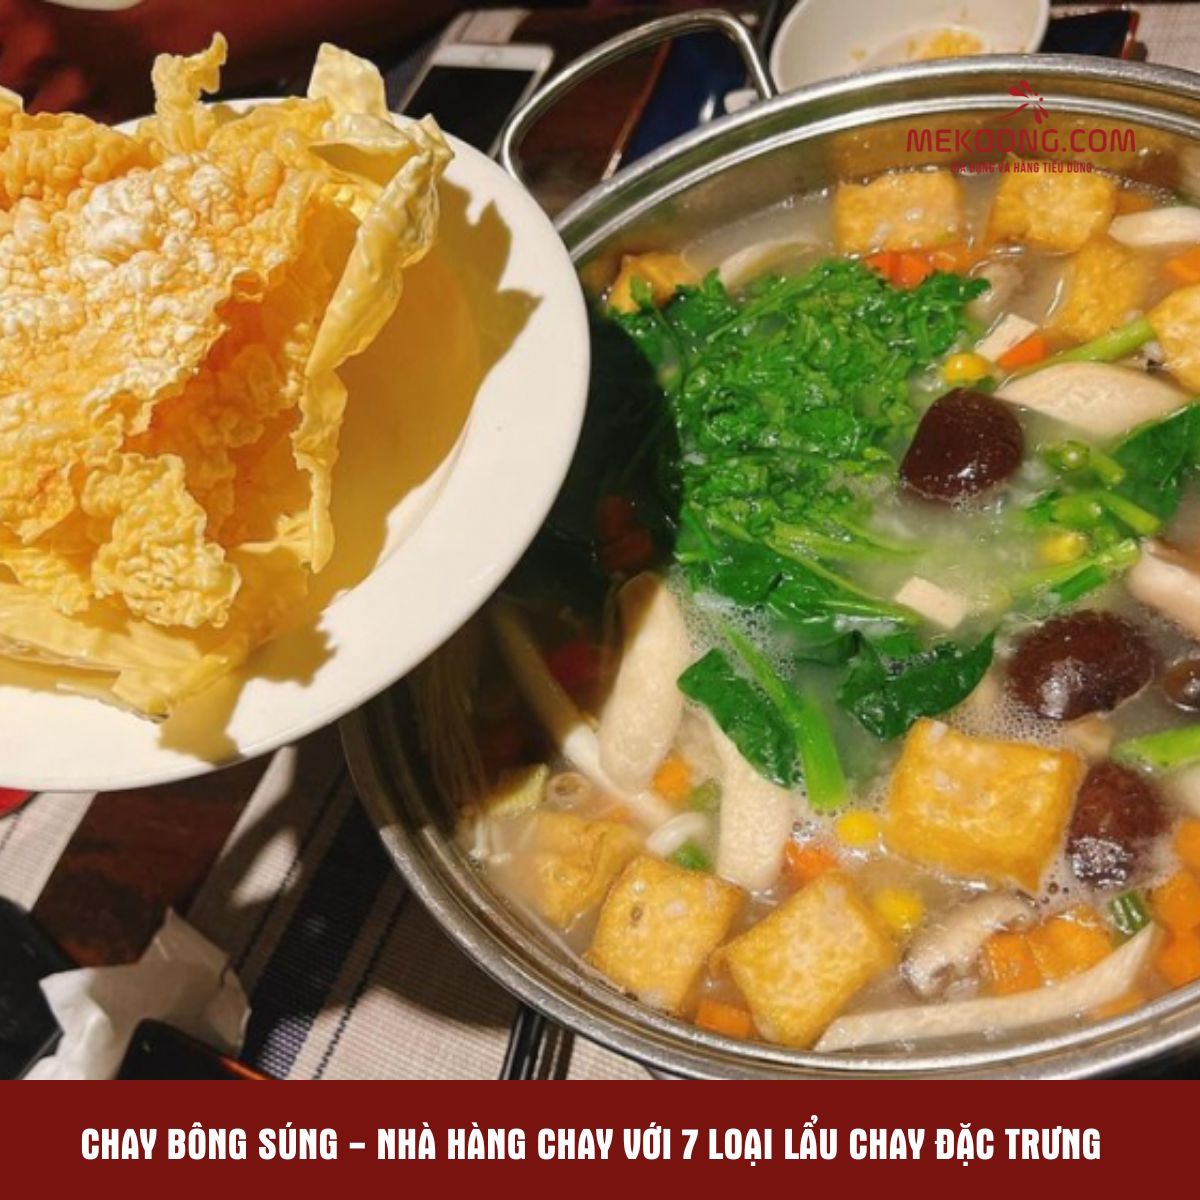 Chay Bông Súng - Nhà hàng chay với 7 loại lẩu chay đặc trưng